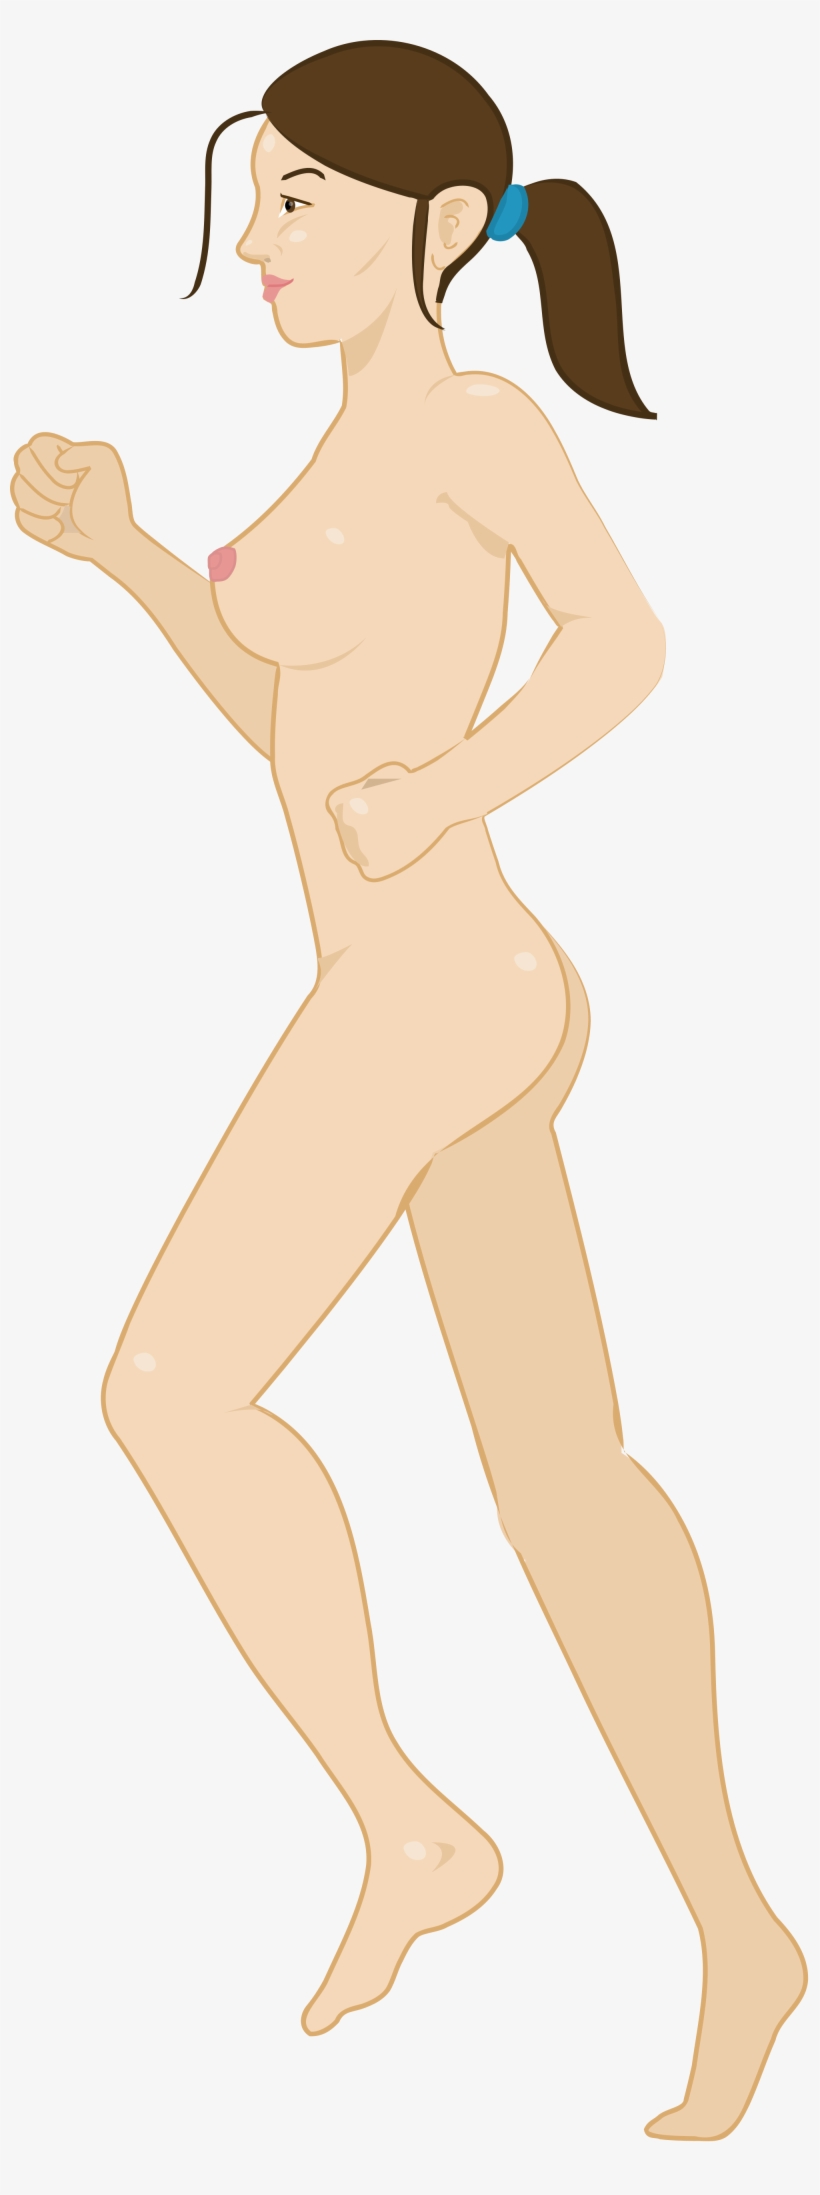 Open - Pixel Art Nude Women, transparent png #4489276